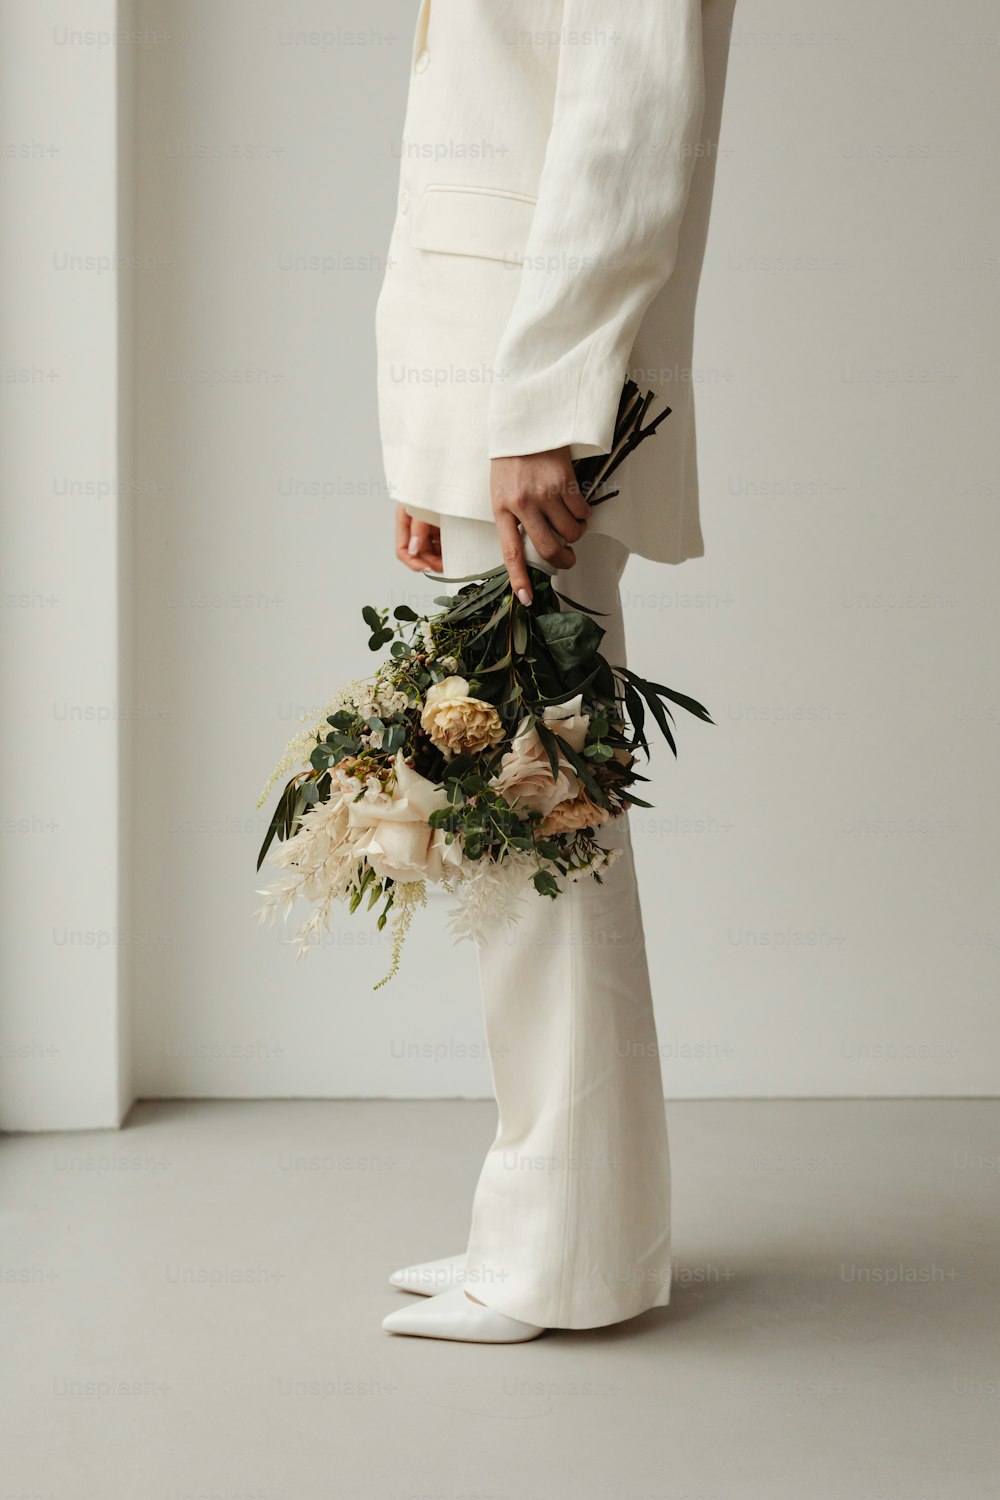 꽃다발을 들고 있는 흰 양복을 입은 사람